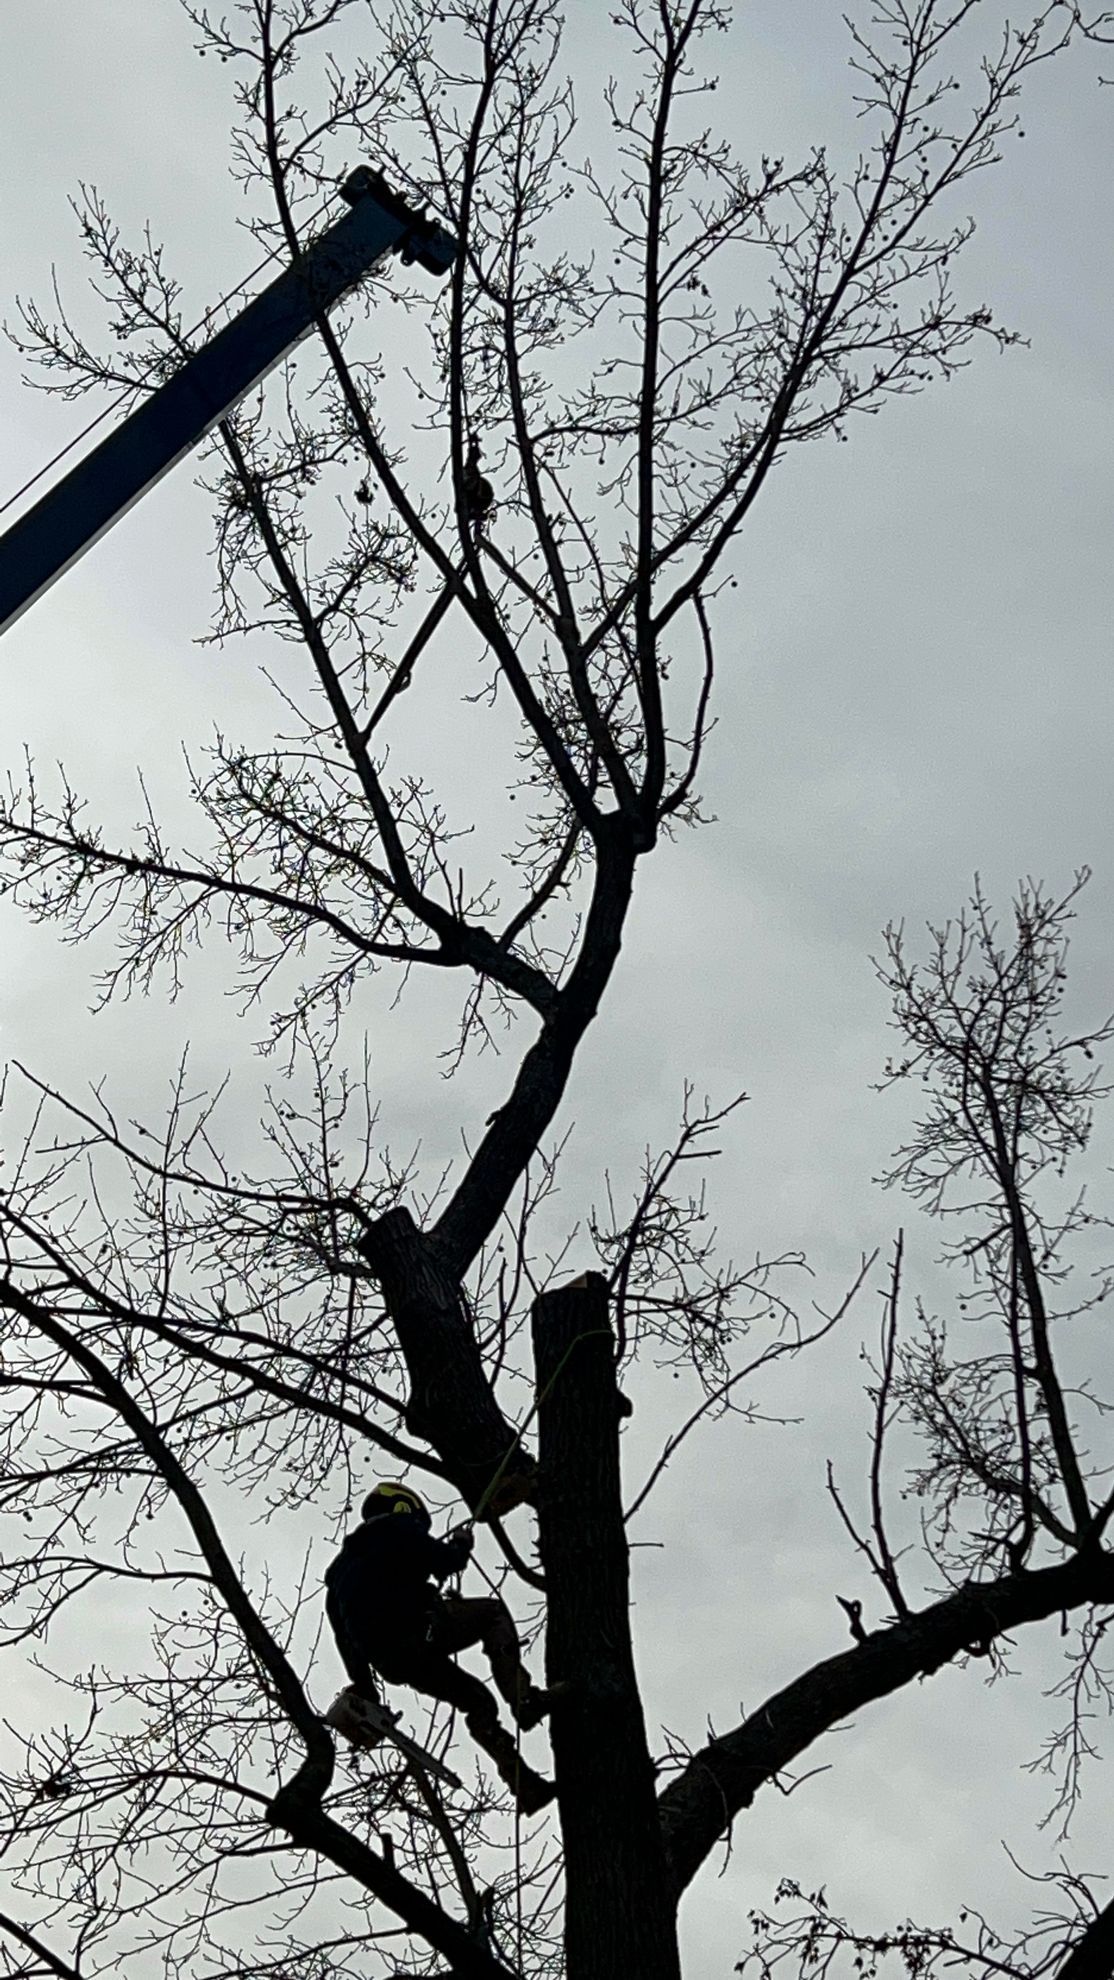 Tree removal in Broken Arrow